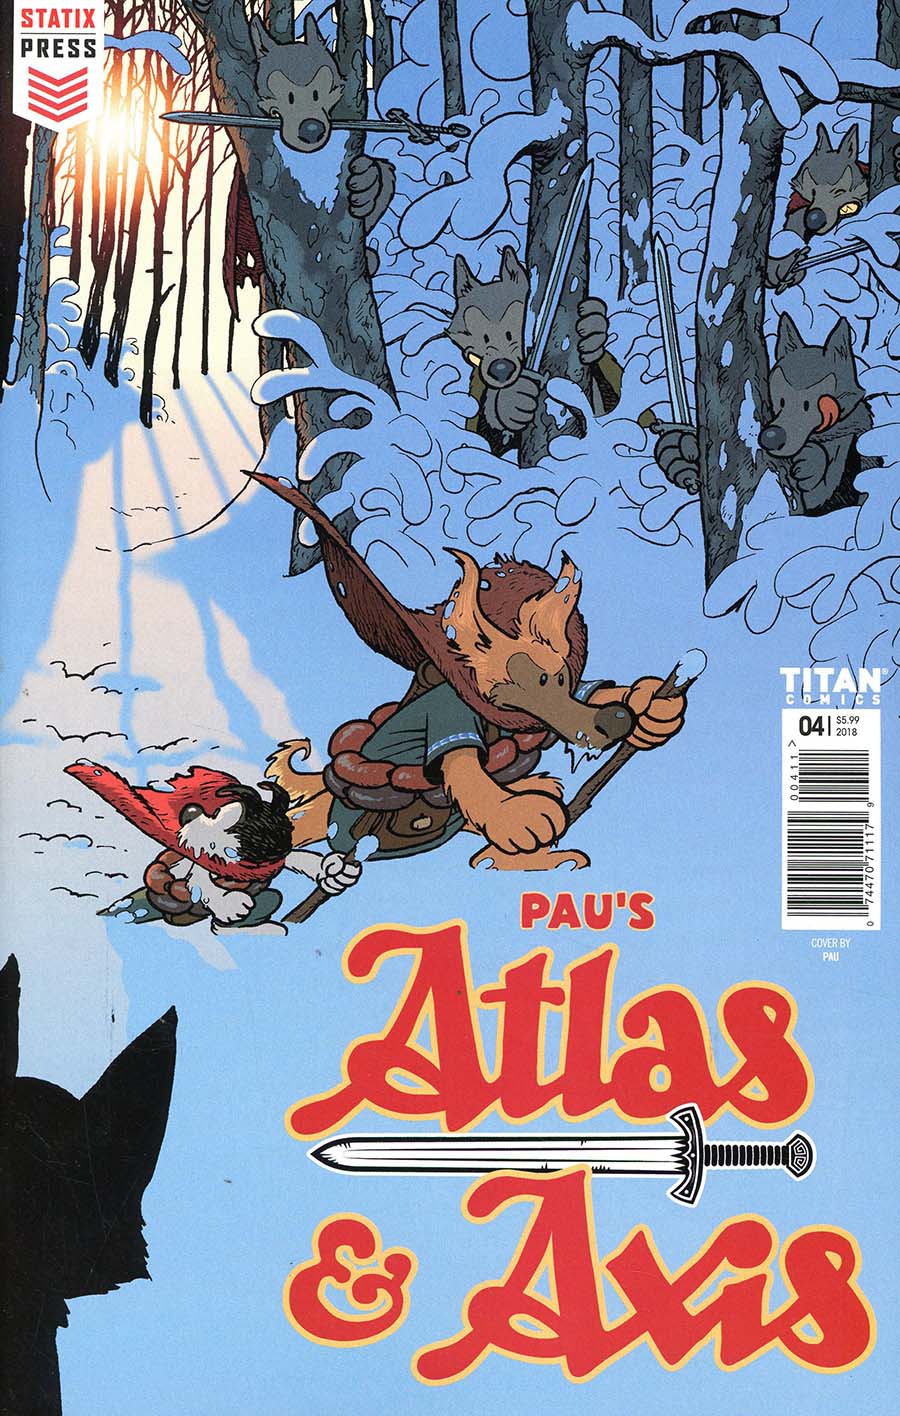 Atlas & Axis #4